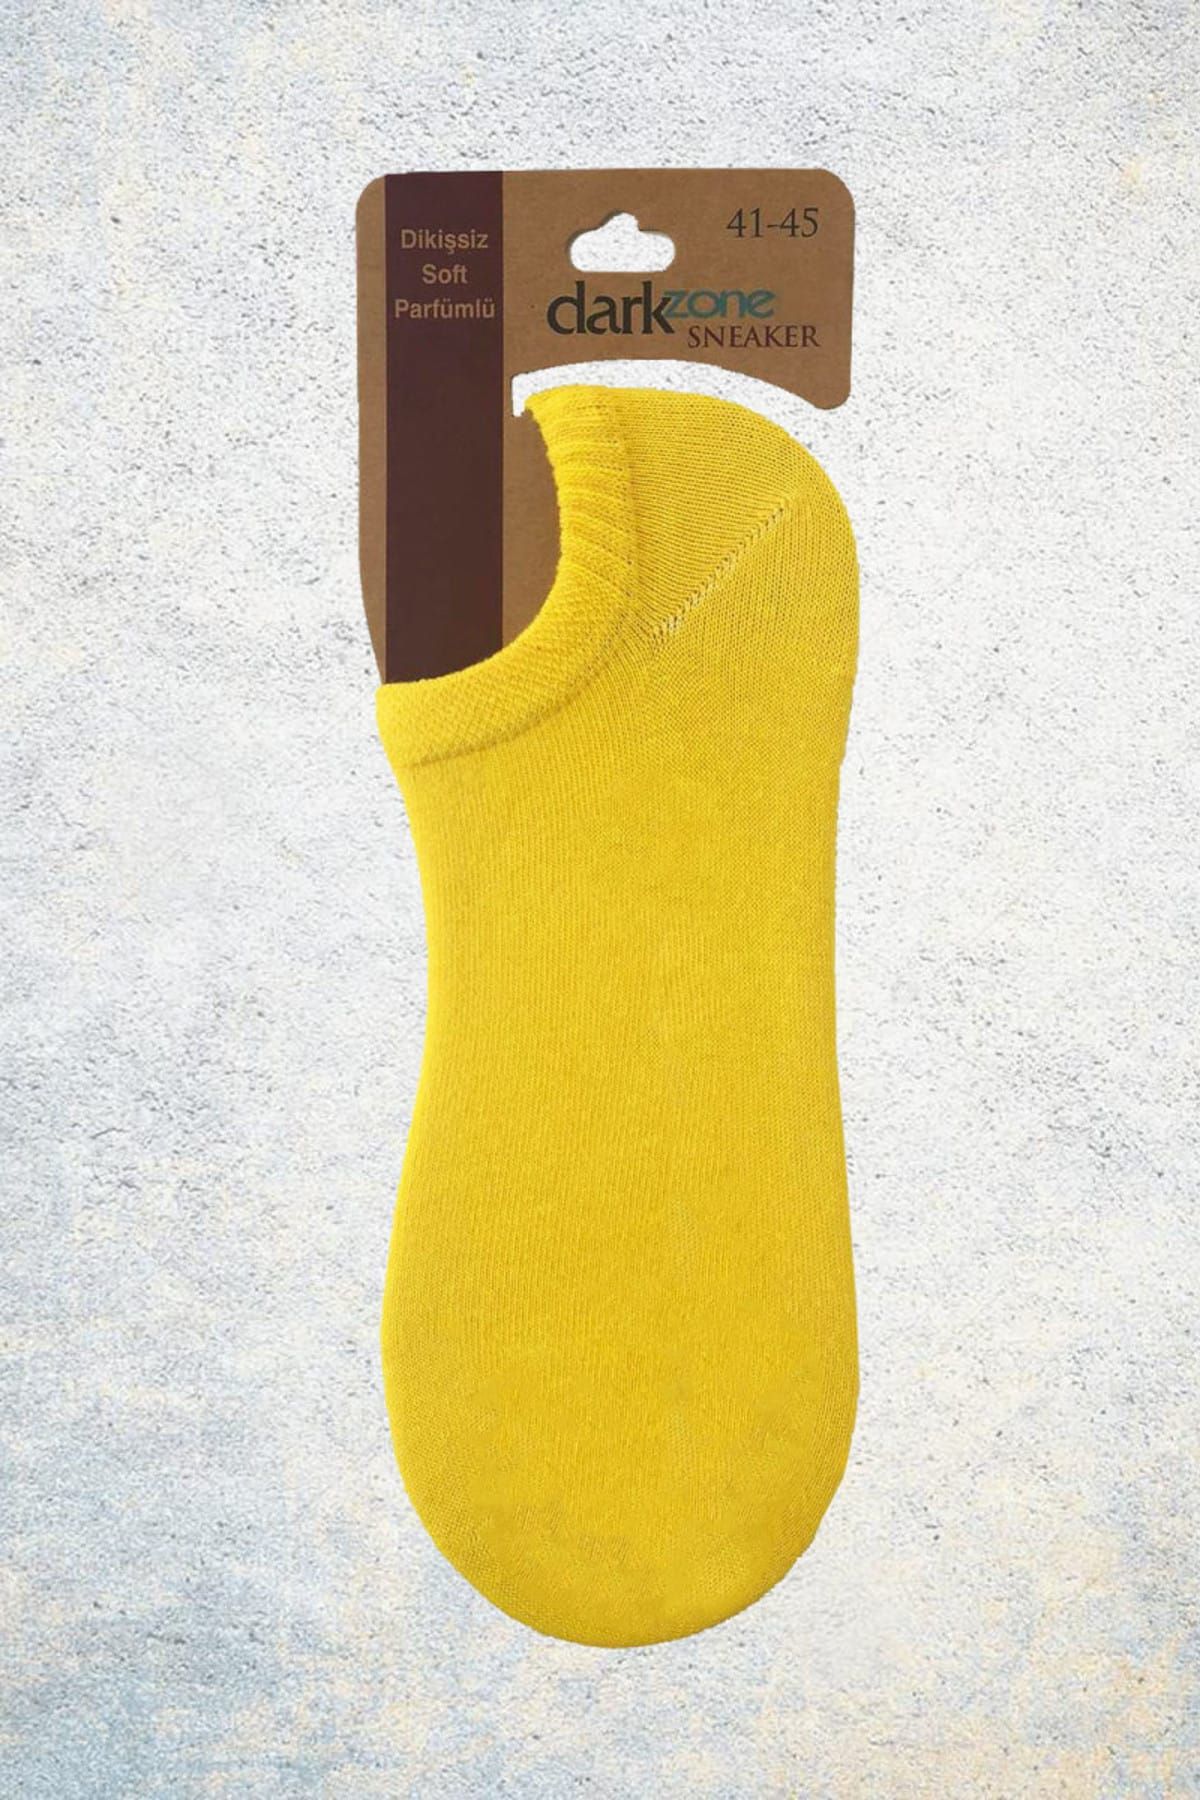 Darkzone Sarı Sneaker Çorap - DZCP0109